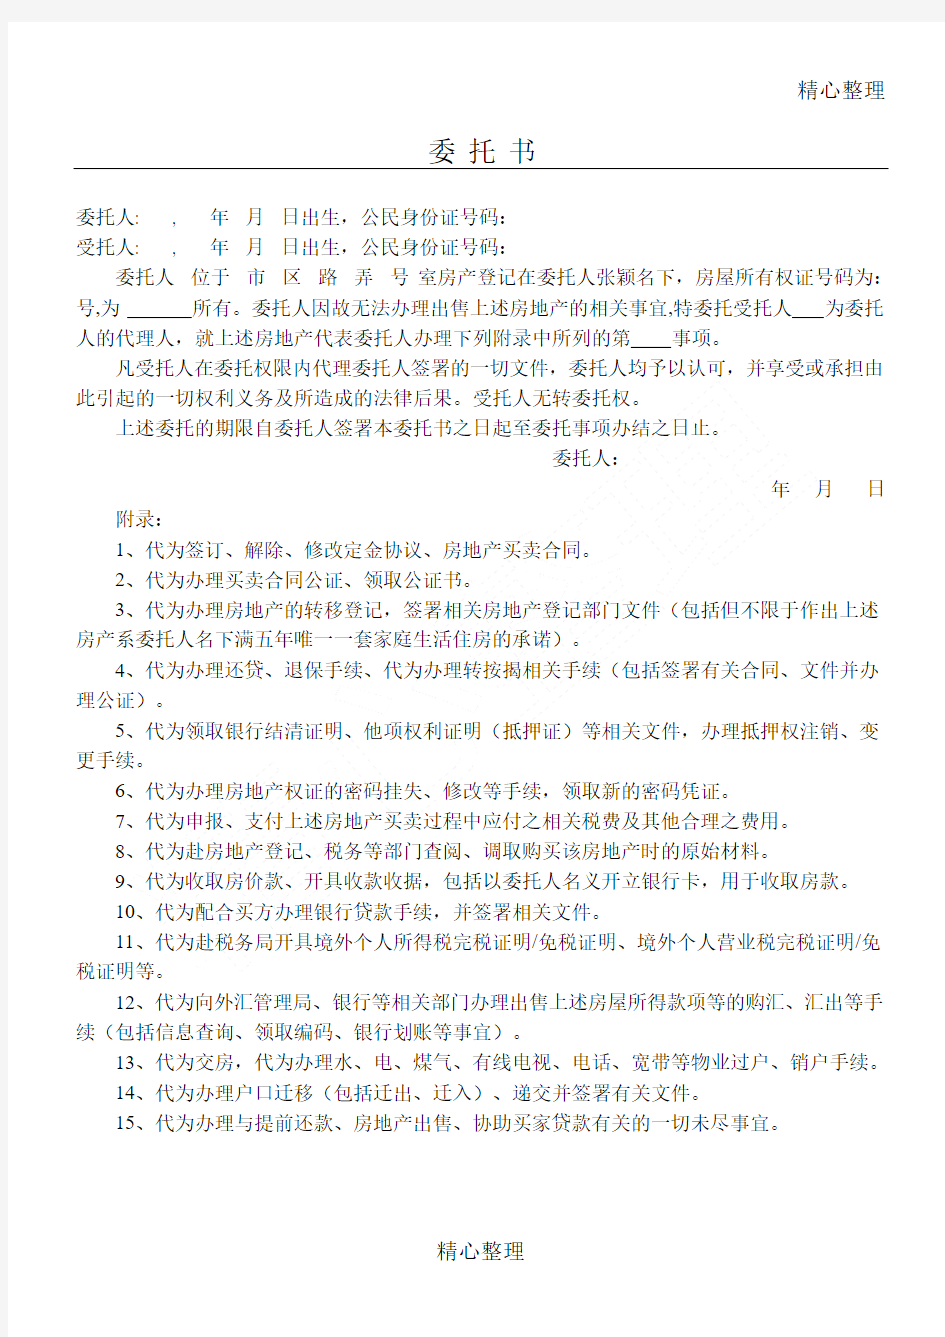 房产买卖委托公证方案样本(上海公证处确认手打版)